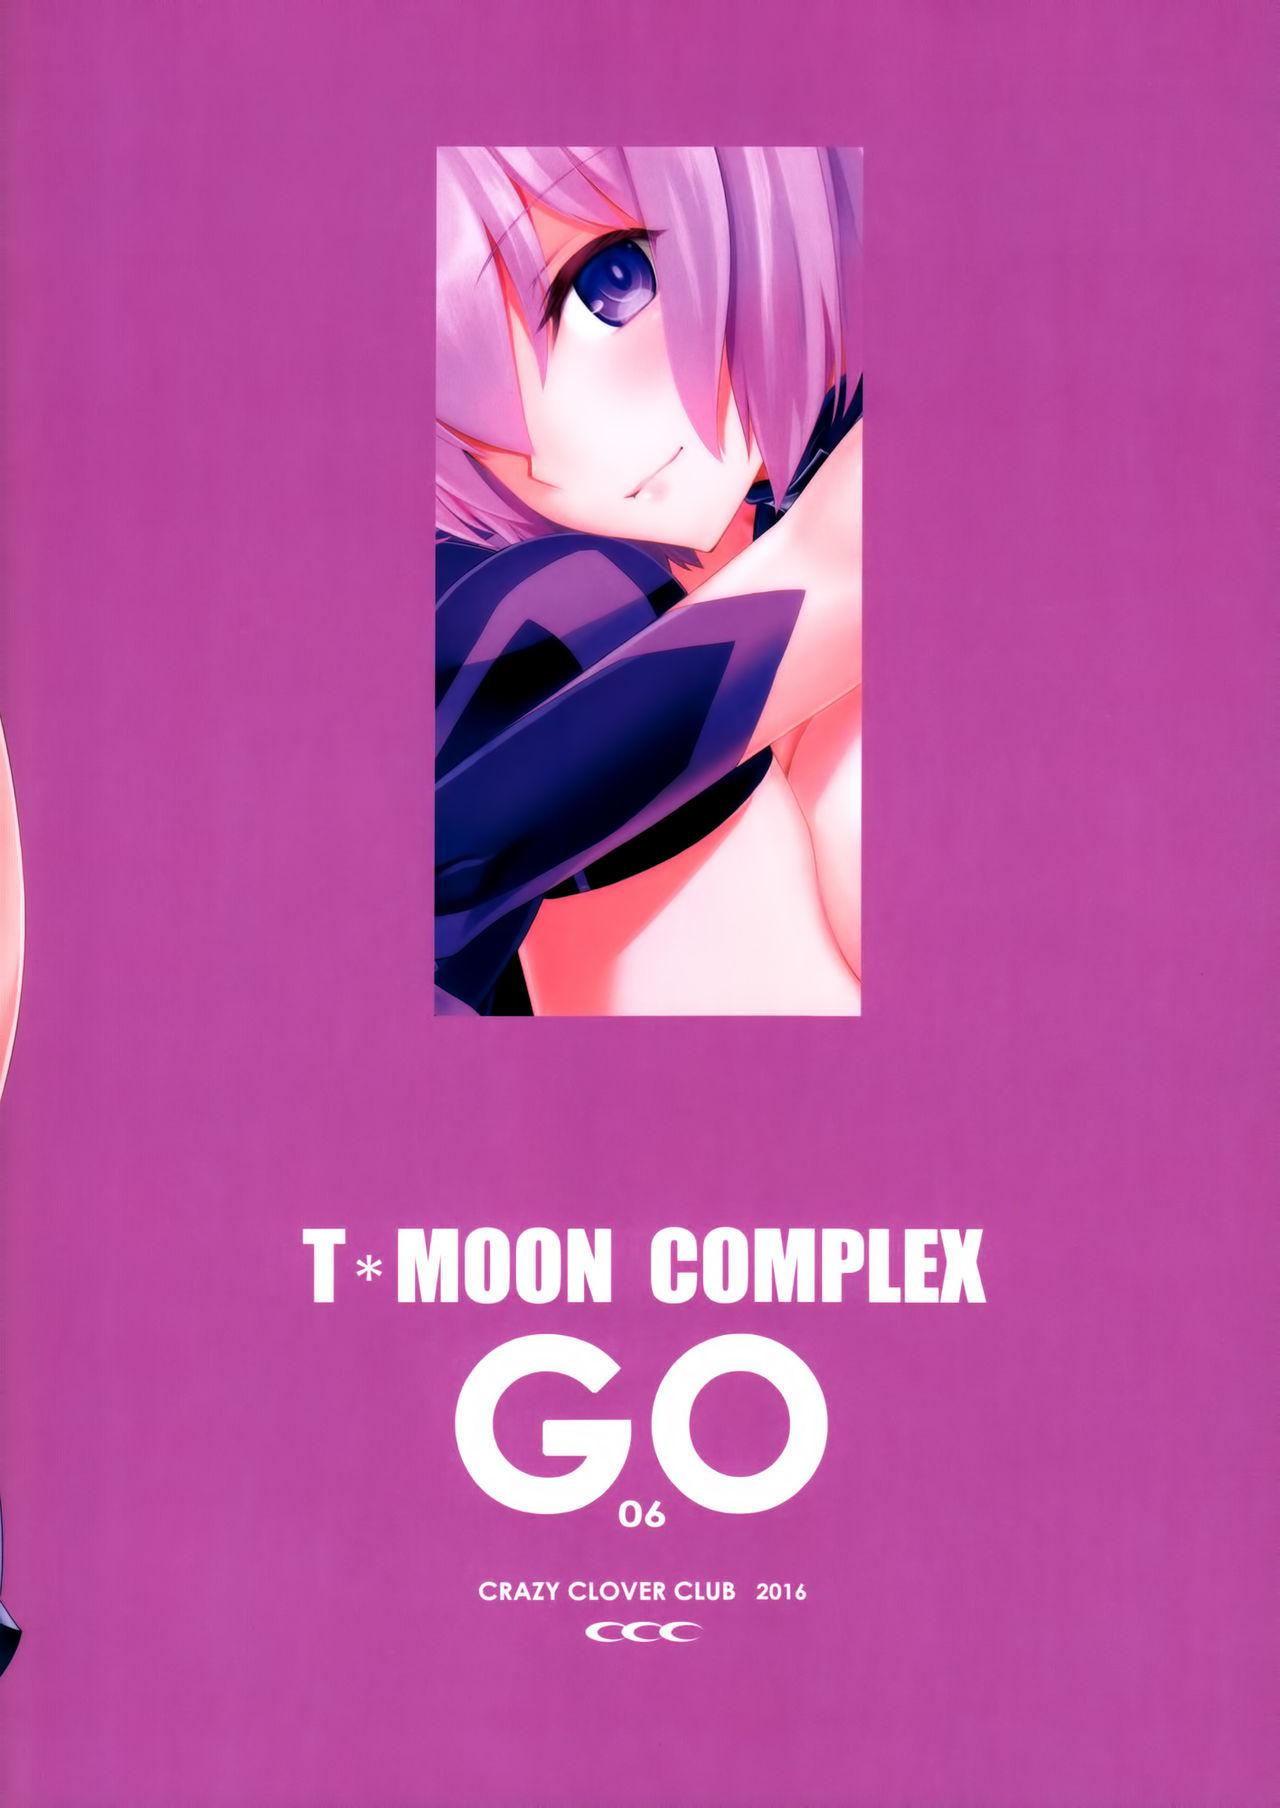 T*MOON COMPLEX GO 06 26